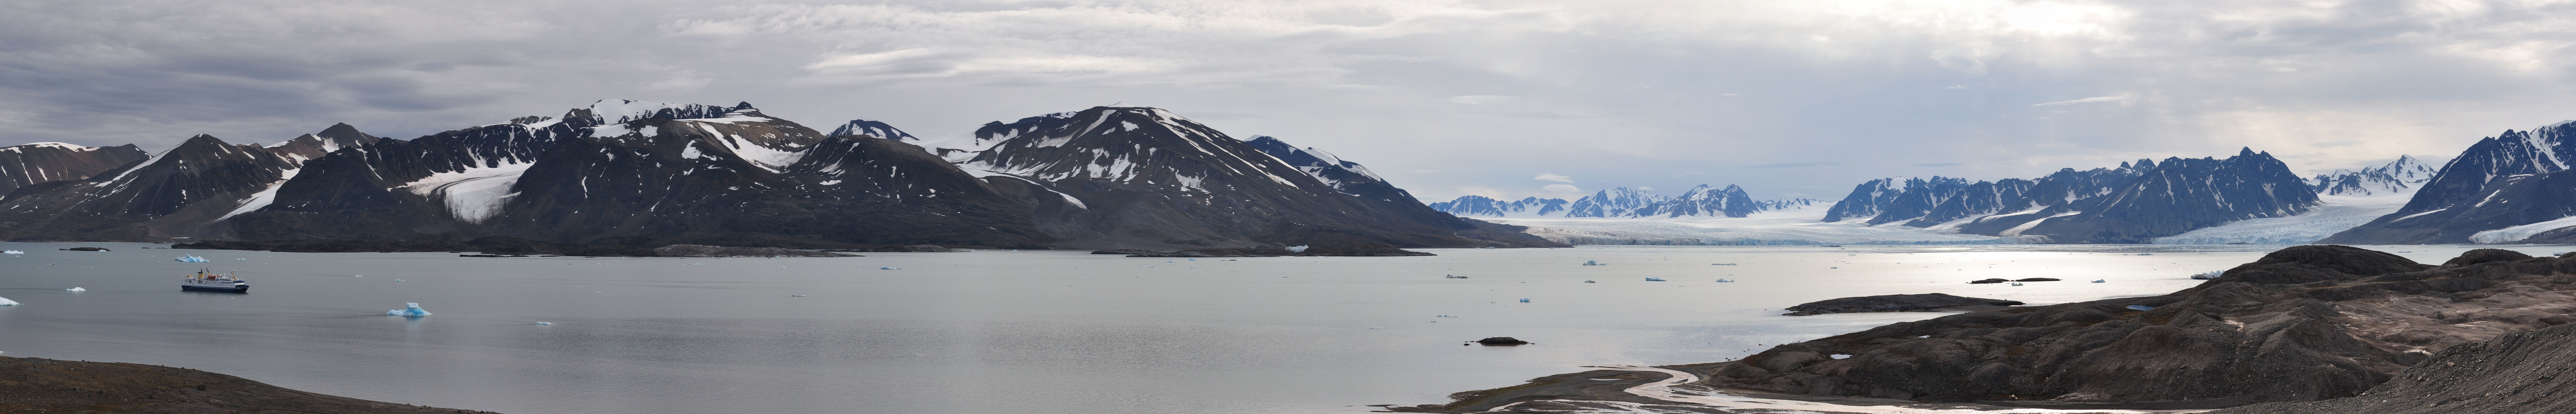 Liefdefjord - Svalbard3.jpg